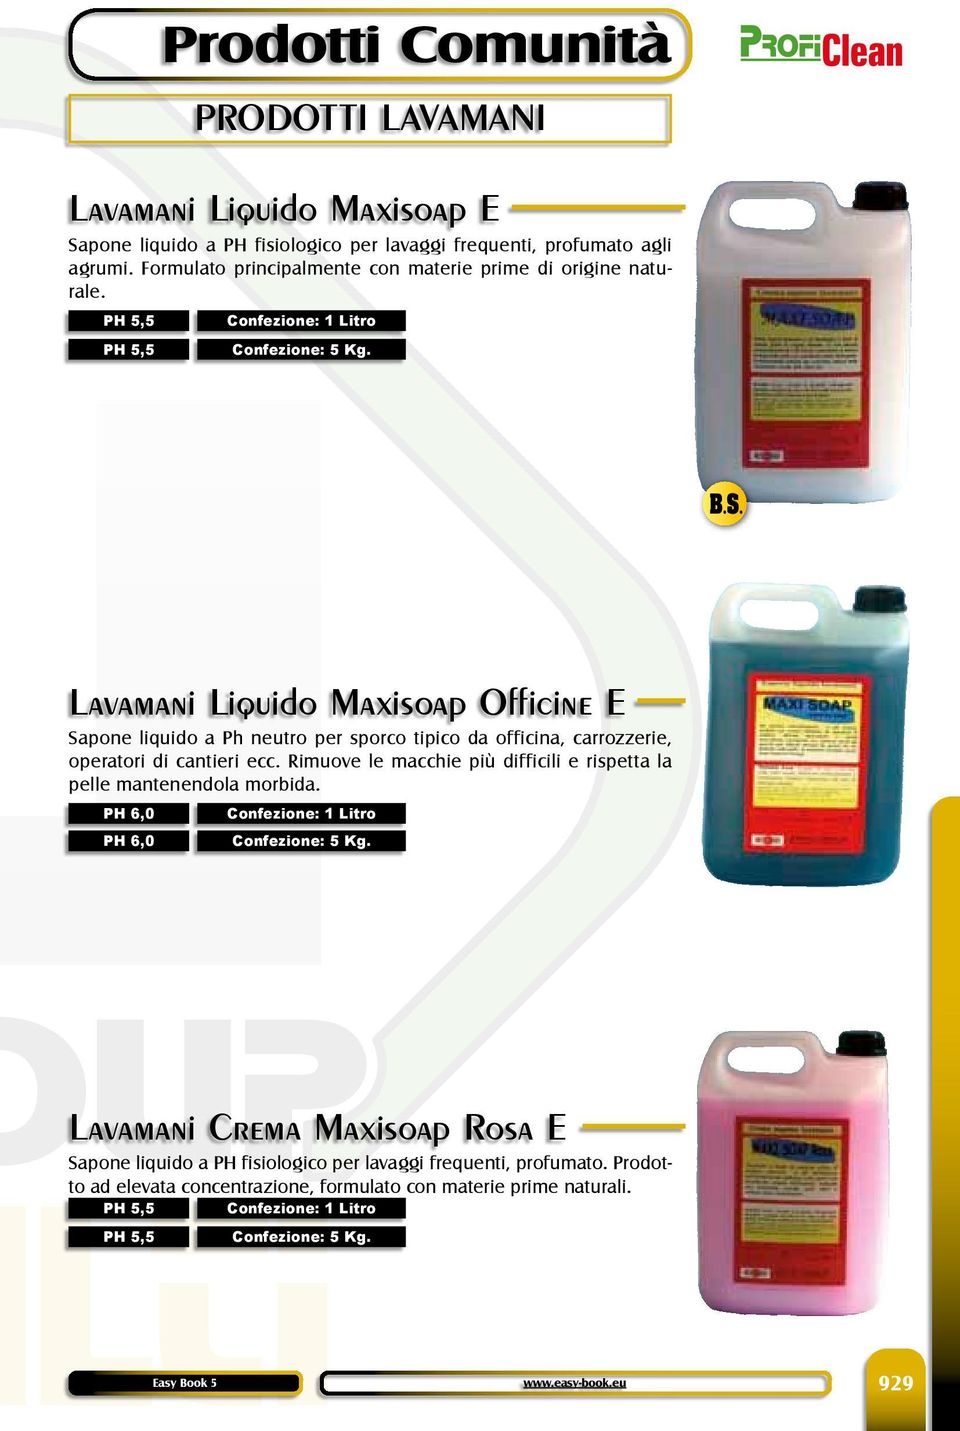 Lavamani Liquido Maxisoap Officine E Sapone liquido a Ph neutro per sporco tipico da officina, carrozzerie, operatori di cantieri ecc.